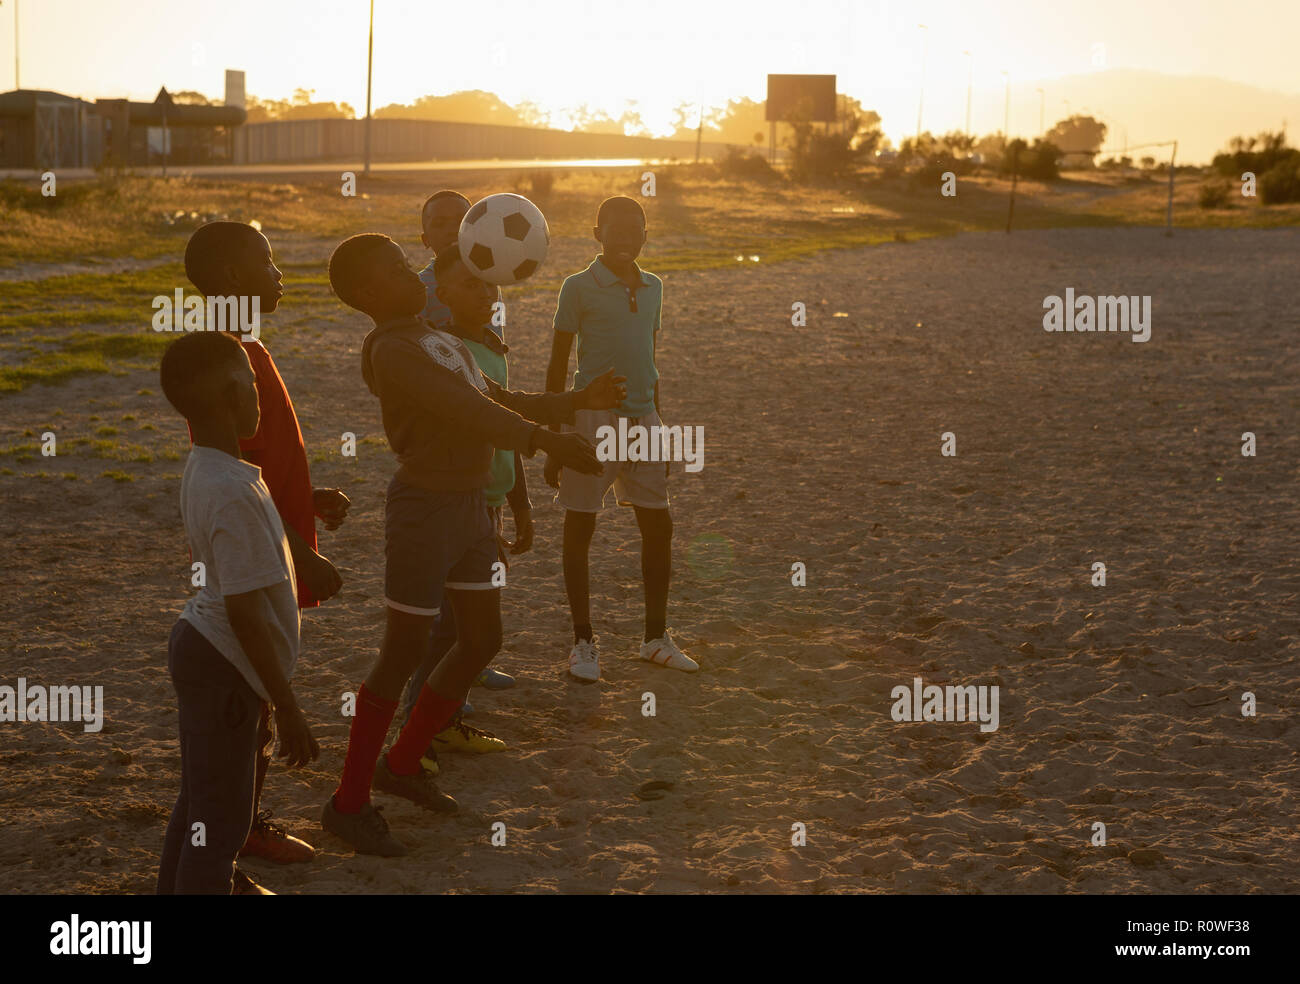 Les enfants jouaient au football dans le sol Banque D'Images